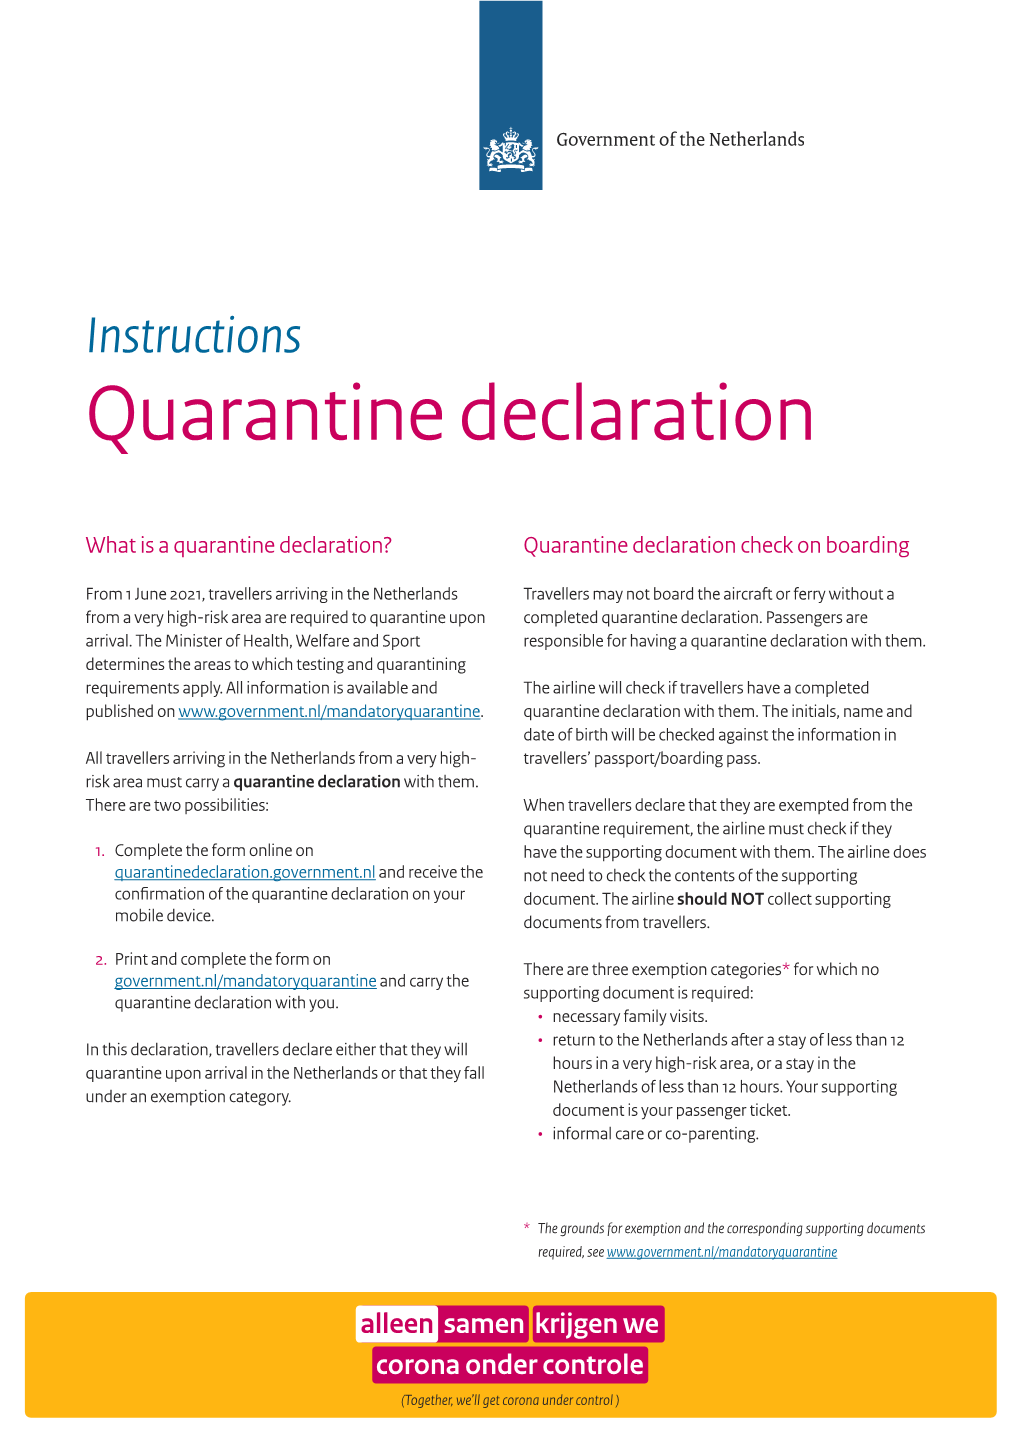 Instructions Quarantine Declaration